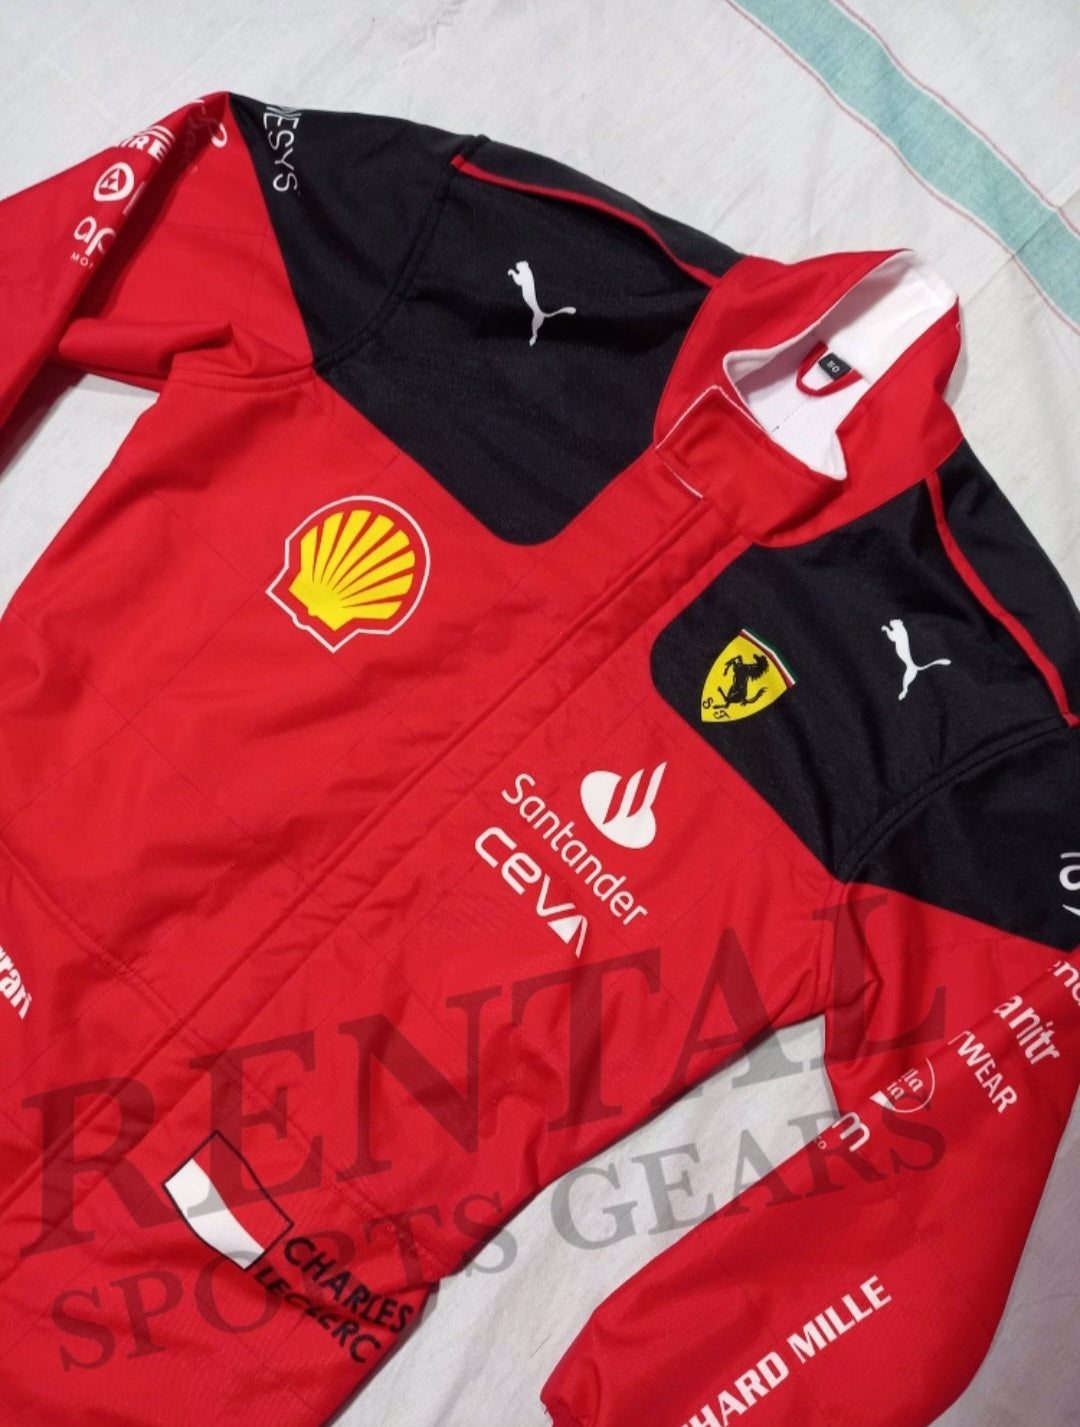 Charles Leclerc Ferrari 2023 Suit Printed - F1 Race Suit